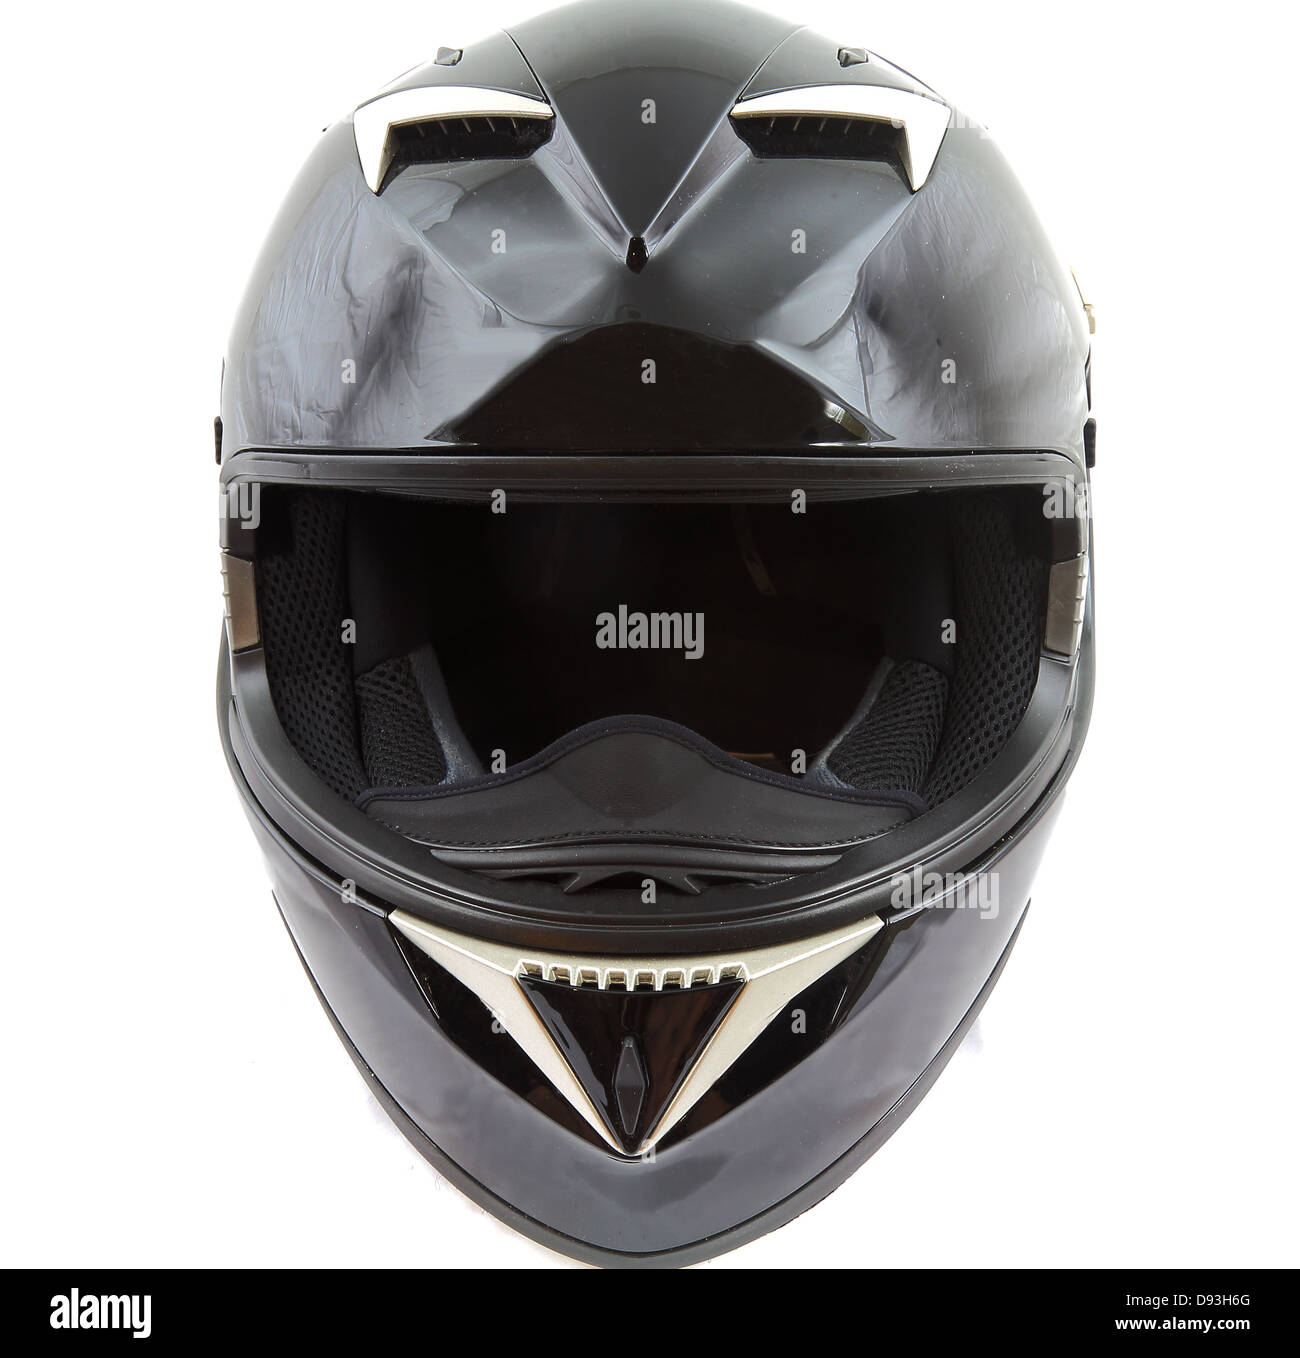 Motorcycle helmet Stock Photo